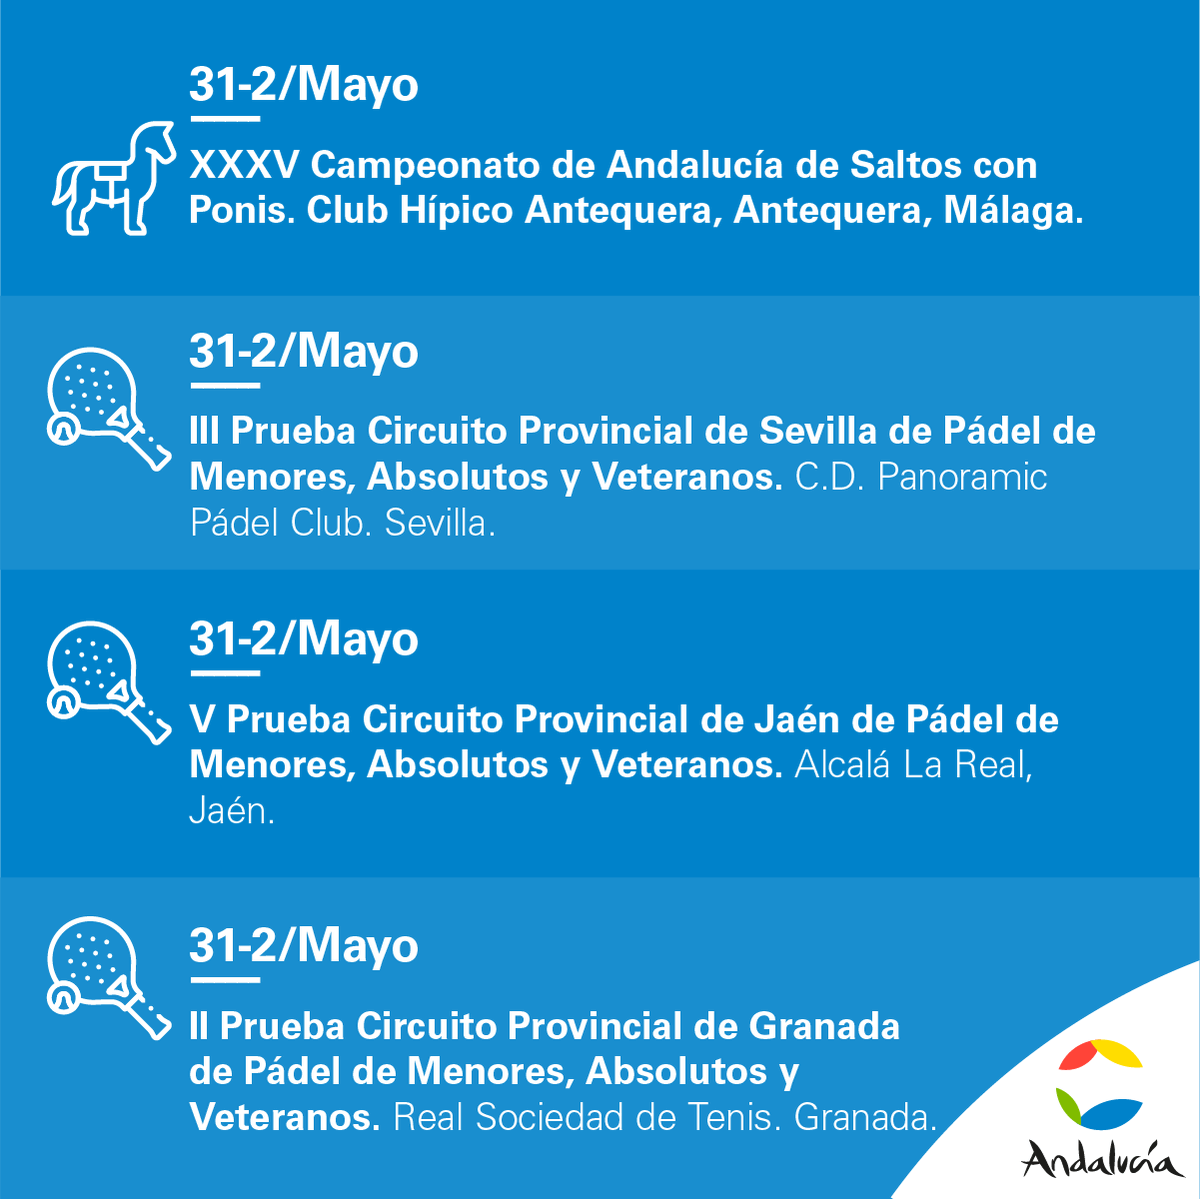 La agenda deportiva viene cargada de actividades para todos👇 ¡Os esperamos! 😊😊 #AndalucíaElLugarDelDeporte #Andalucía [HILO]